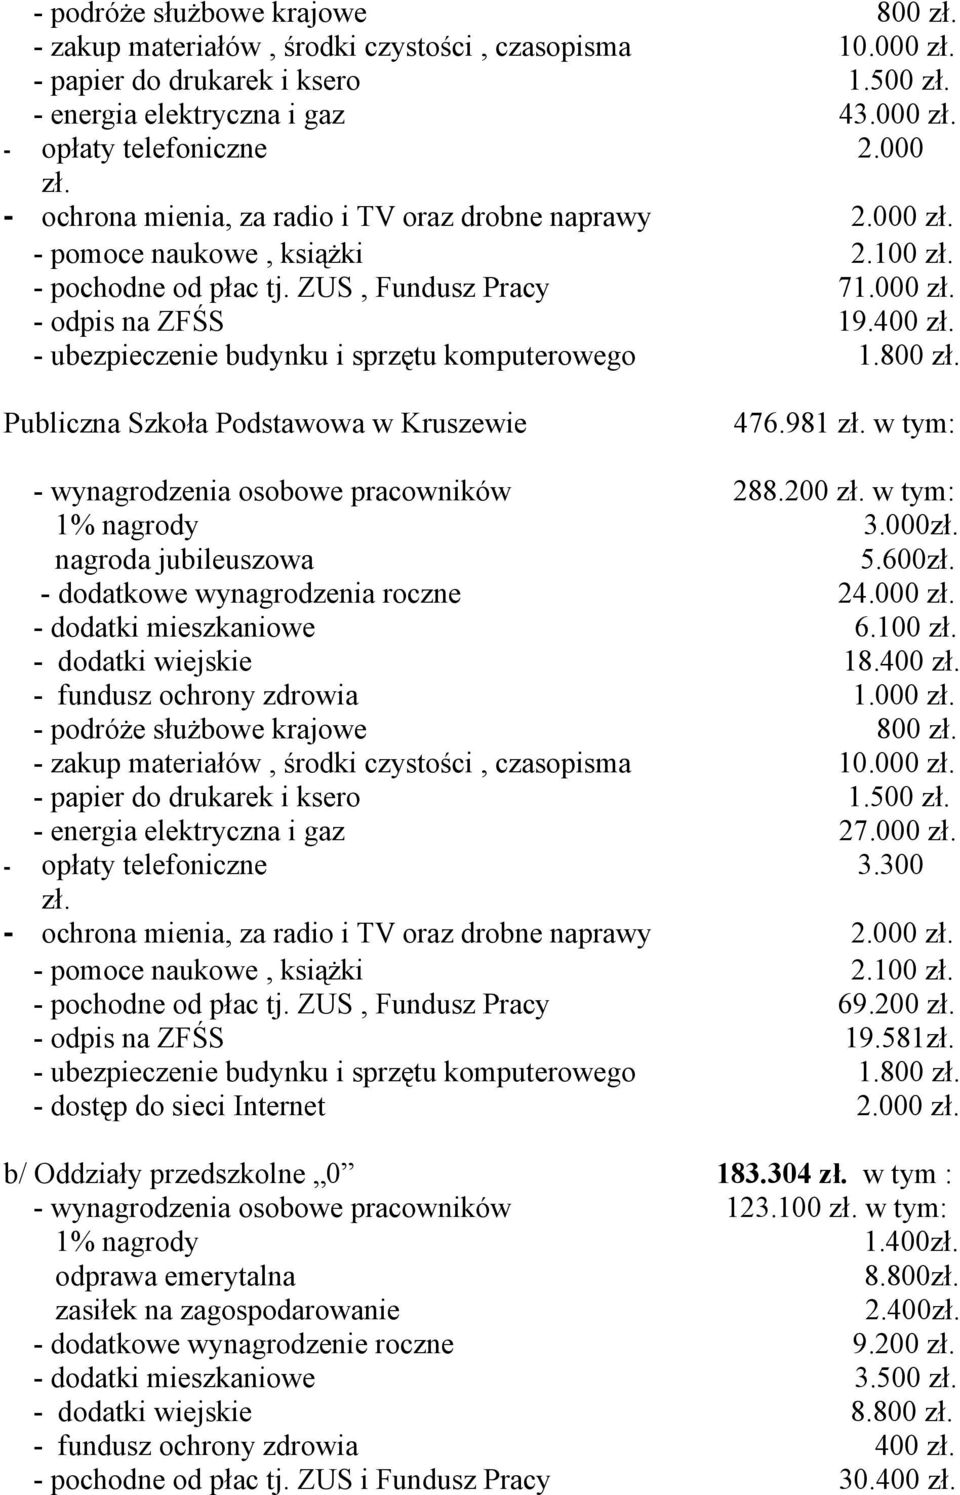 400 - ubezpieczenie budynku i sprzętu komputerowego 1.800 Publiczna Szkoła Podstawowa w Kruszewie 476.981 w tym: - wynagrodzenia osobowe pracowników 288.200 w tym: 1% nagrody 3.